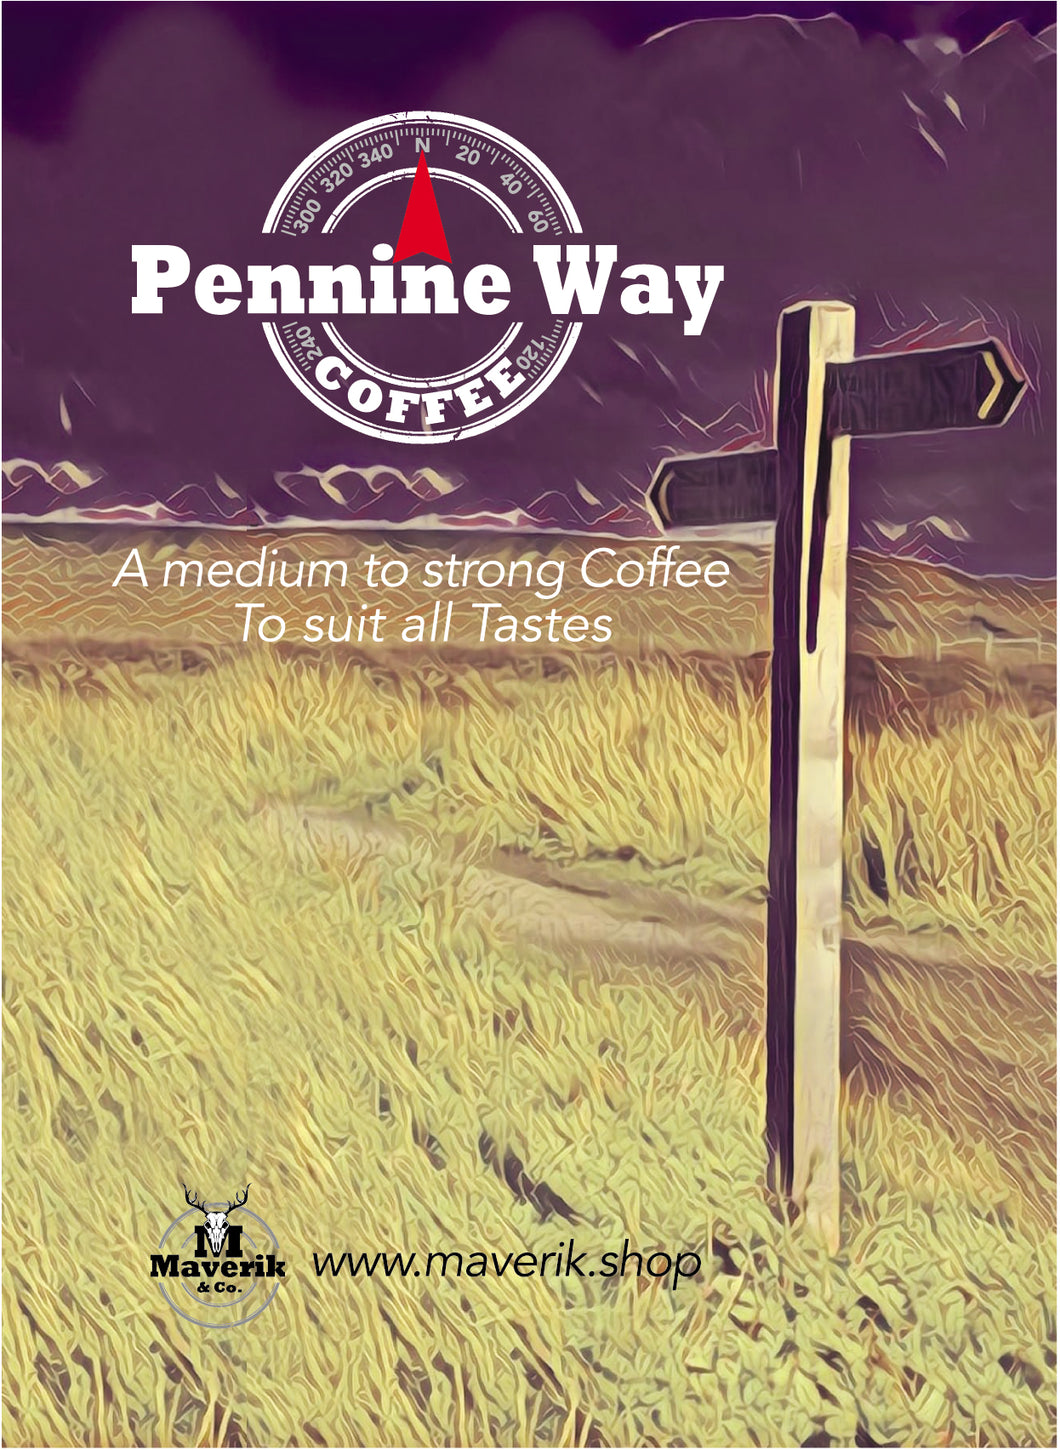 Pennine Way Coffee